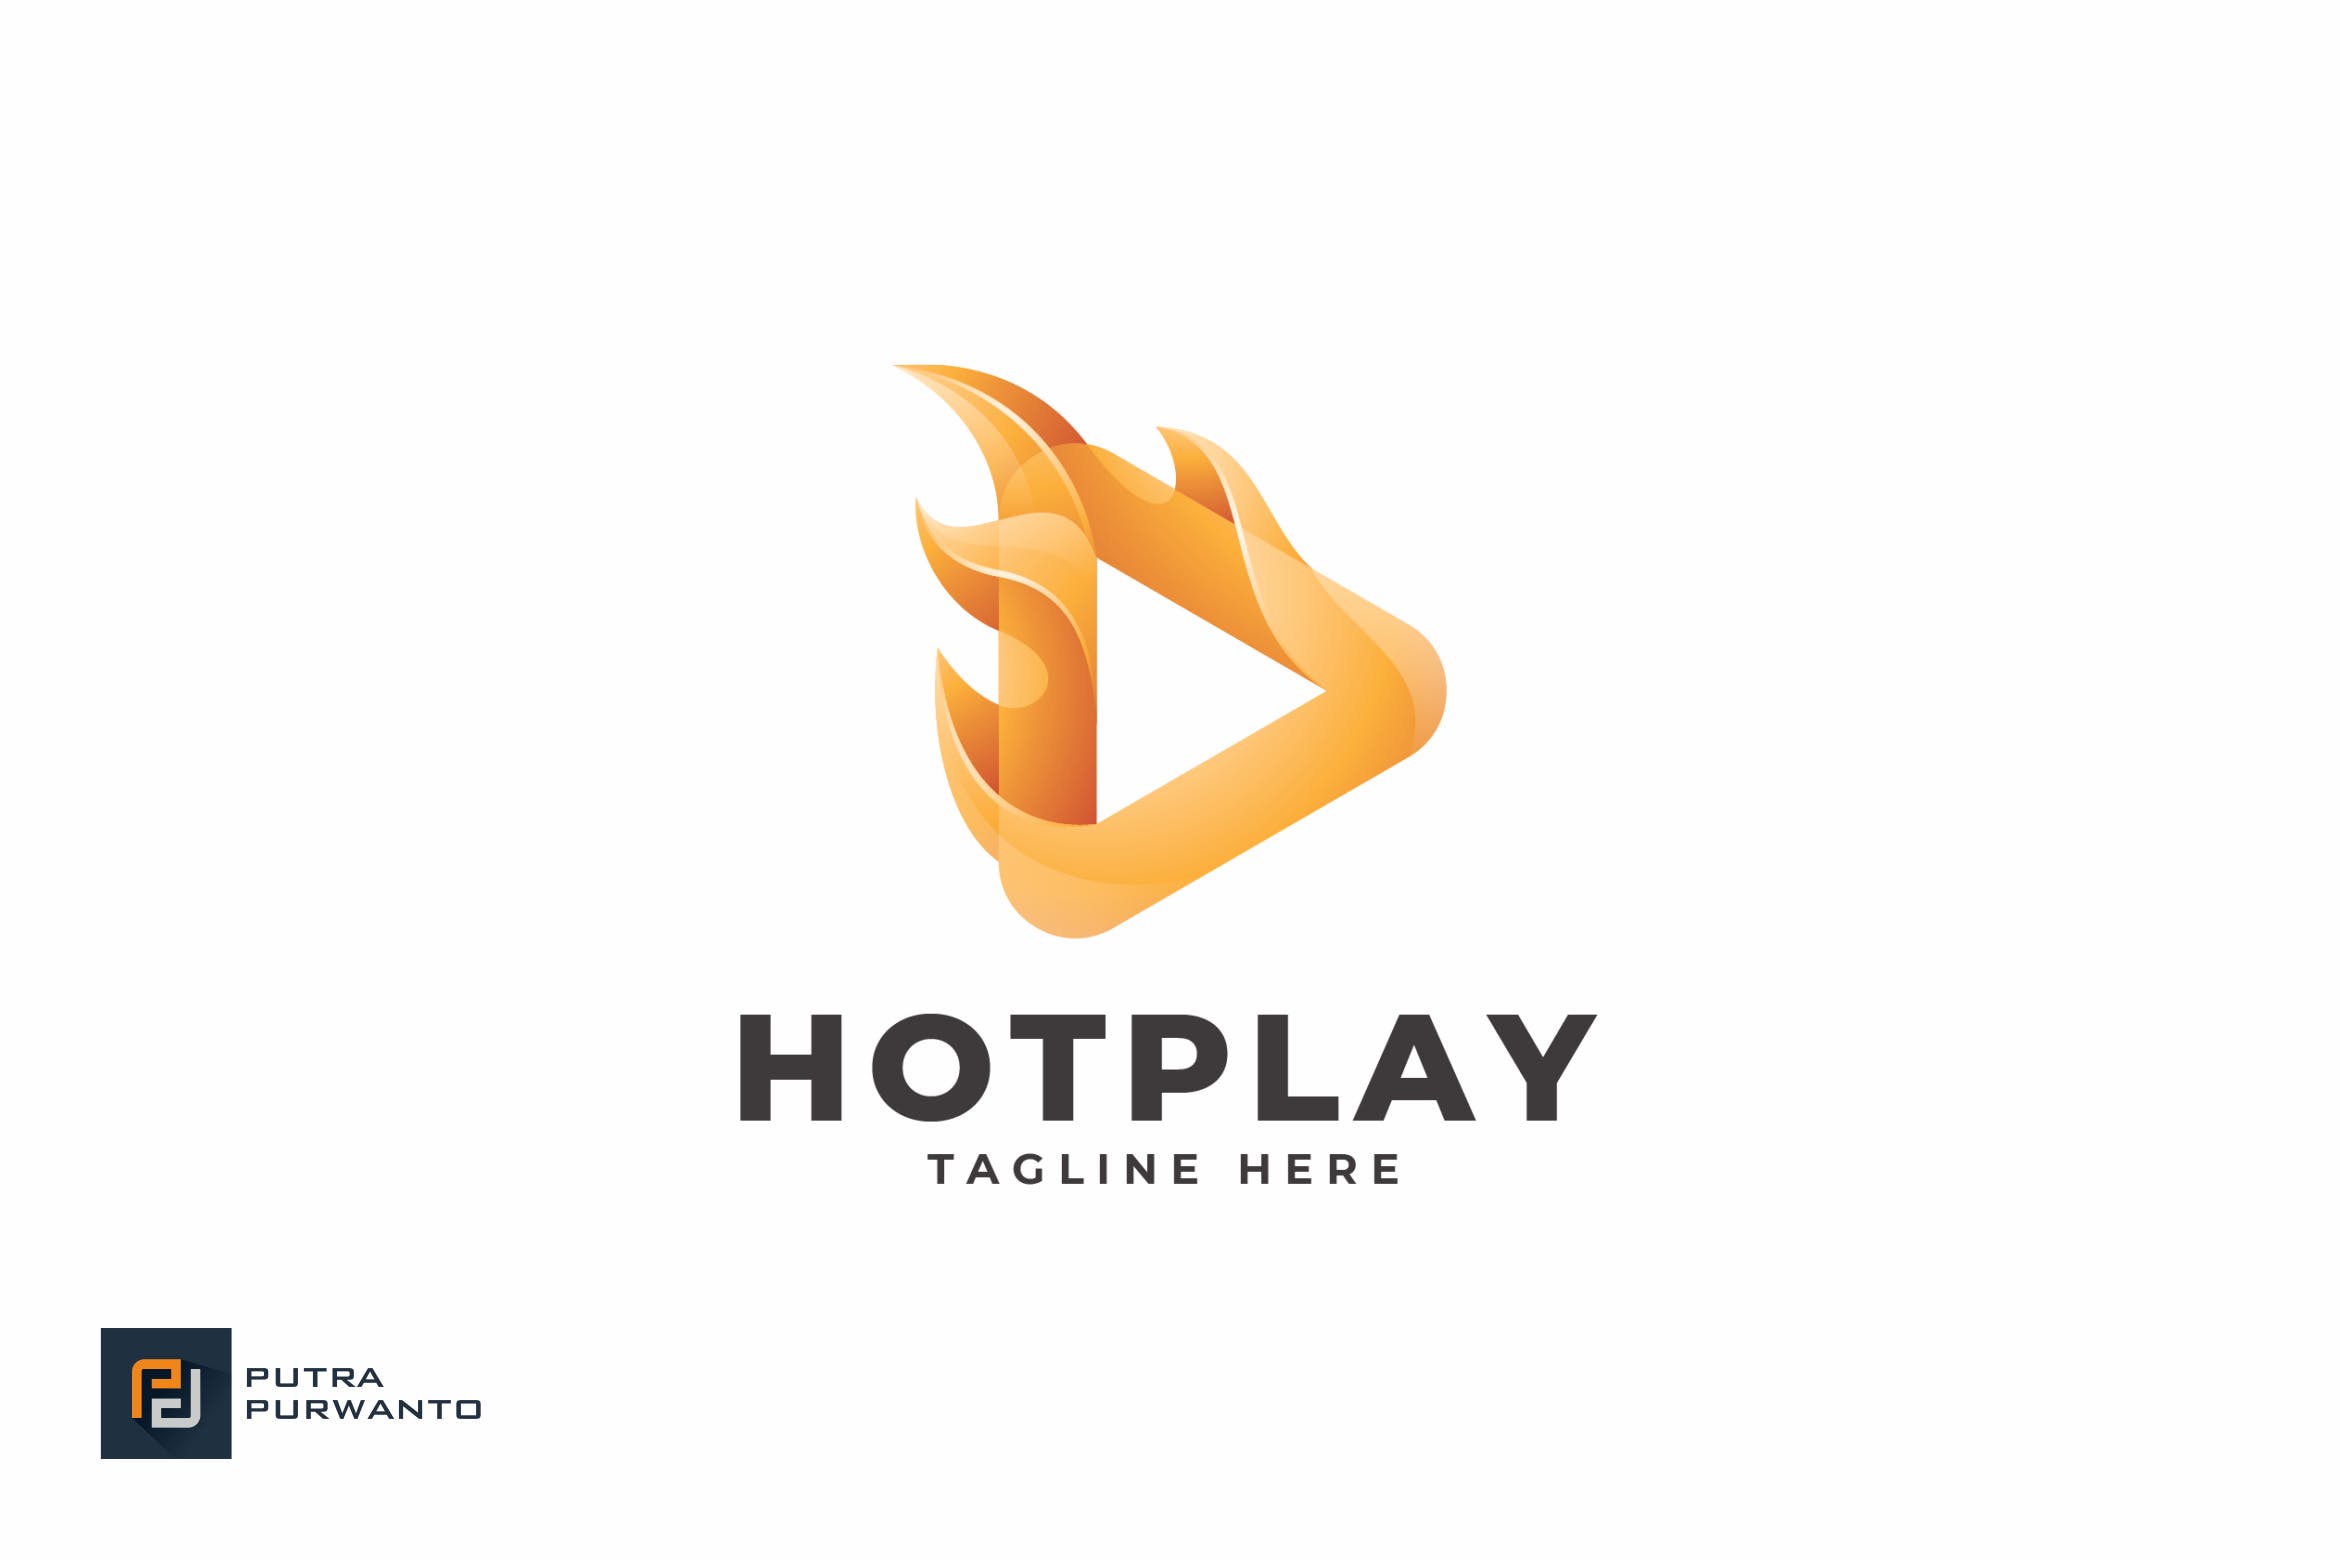 播放器/多媒体品牌Logo设计大洋岛精选模板 Hot Play – Logo Template插图